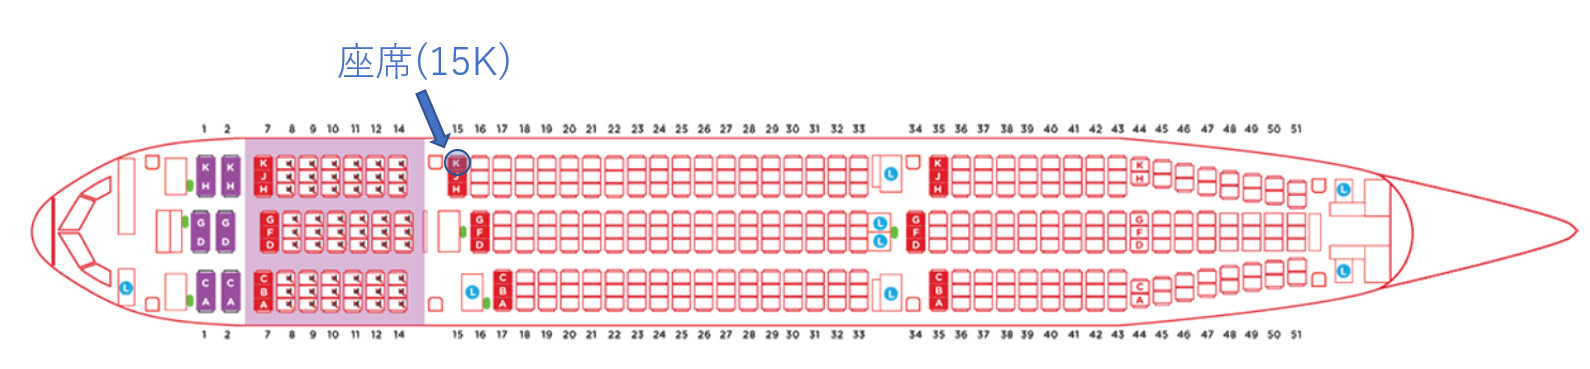 ベトジェットエアのA330型機の座席表